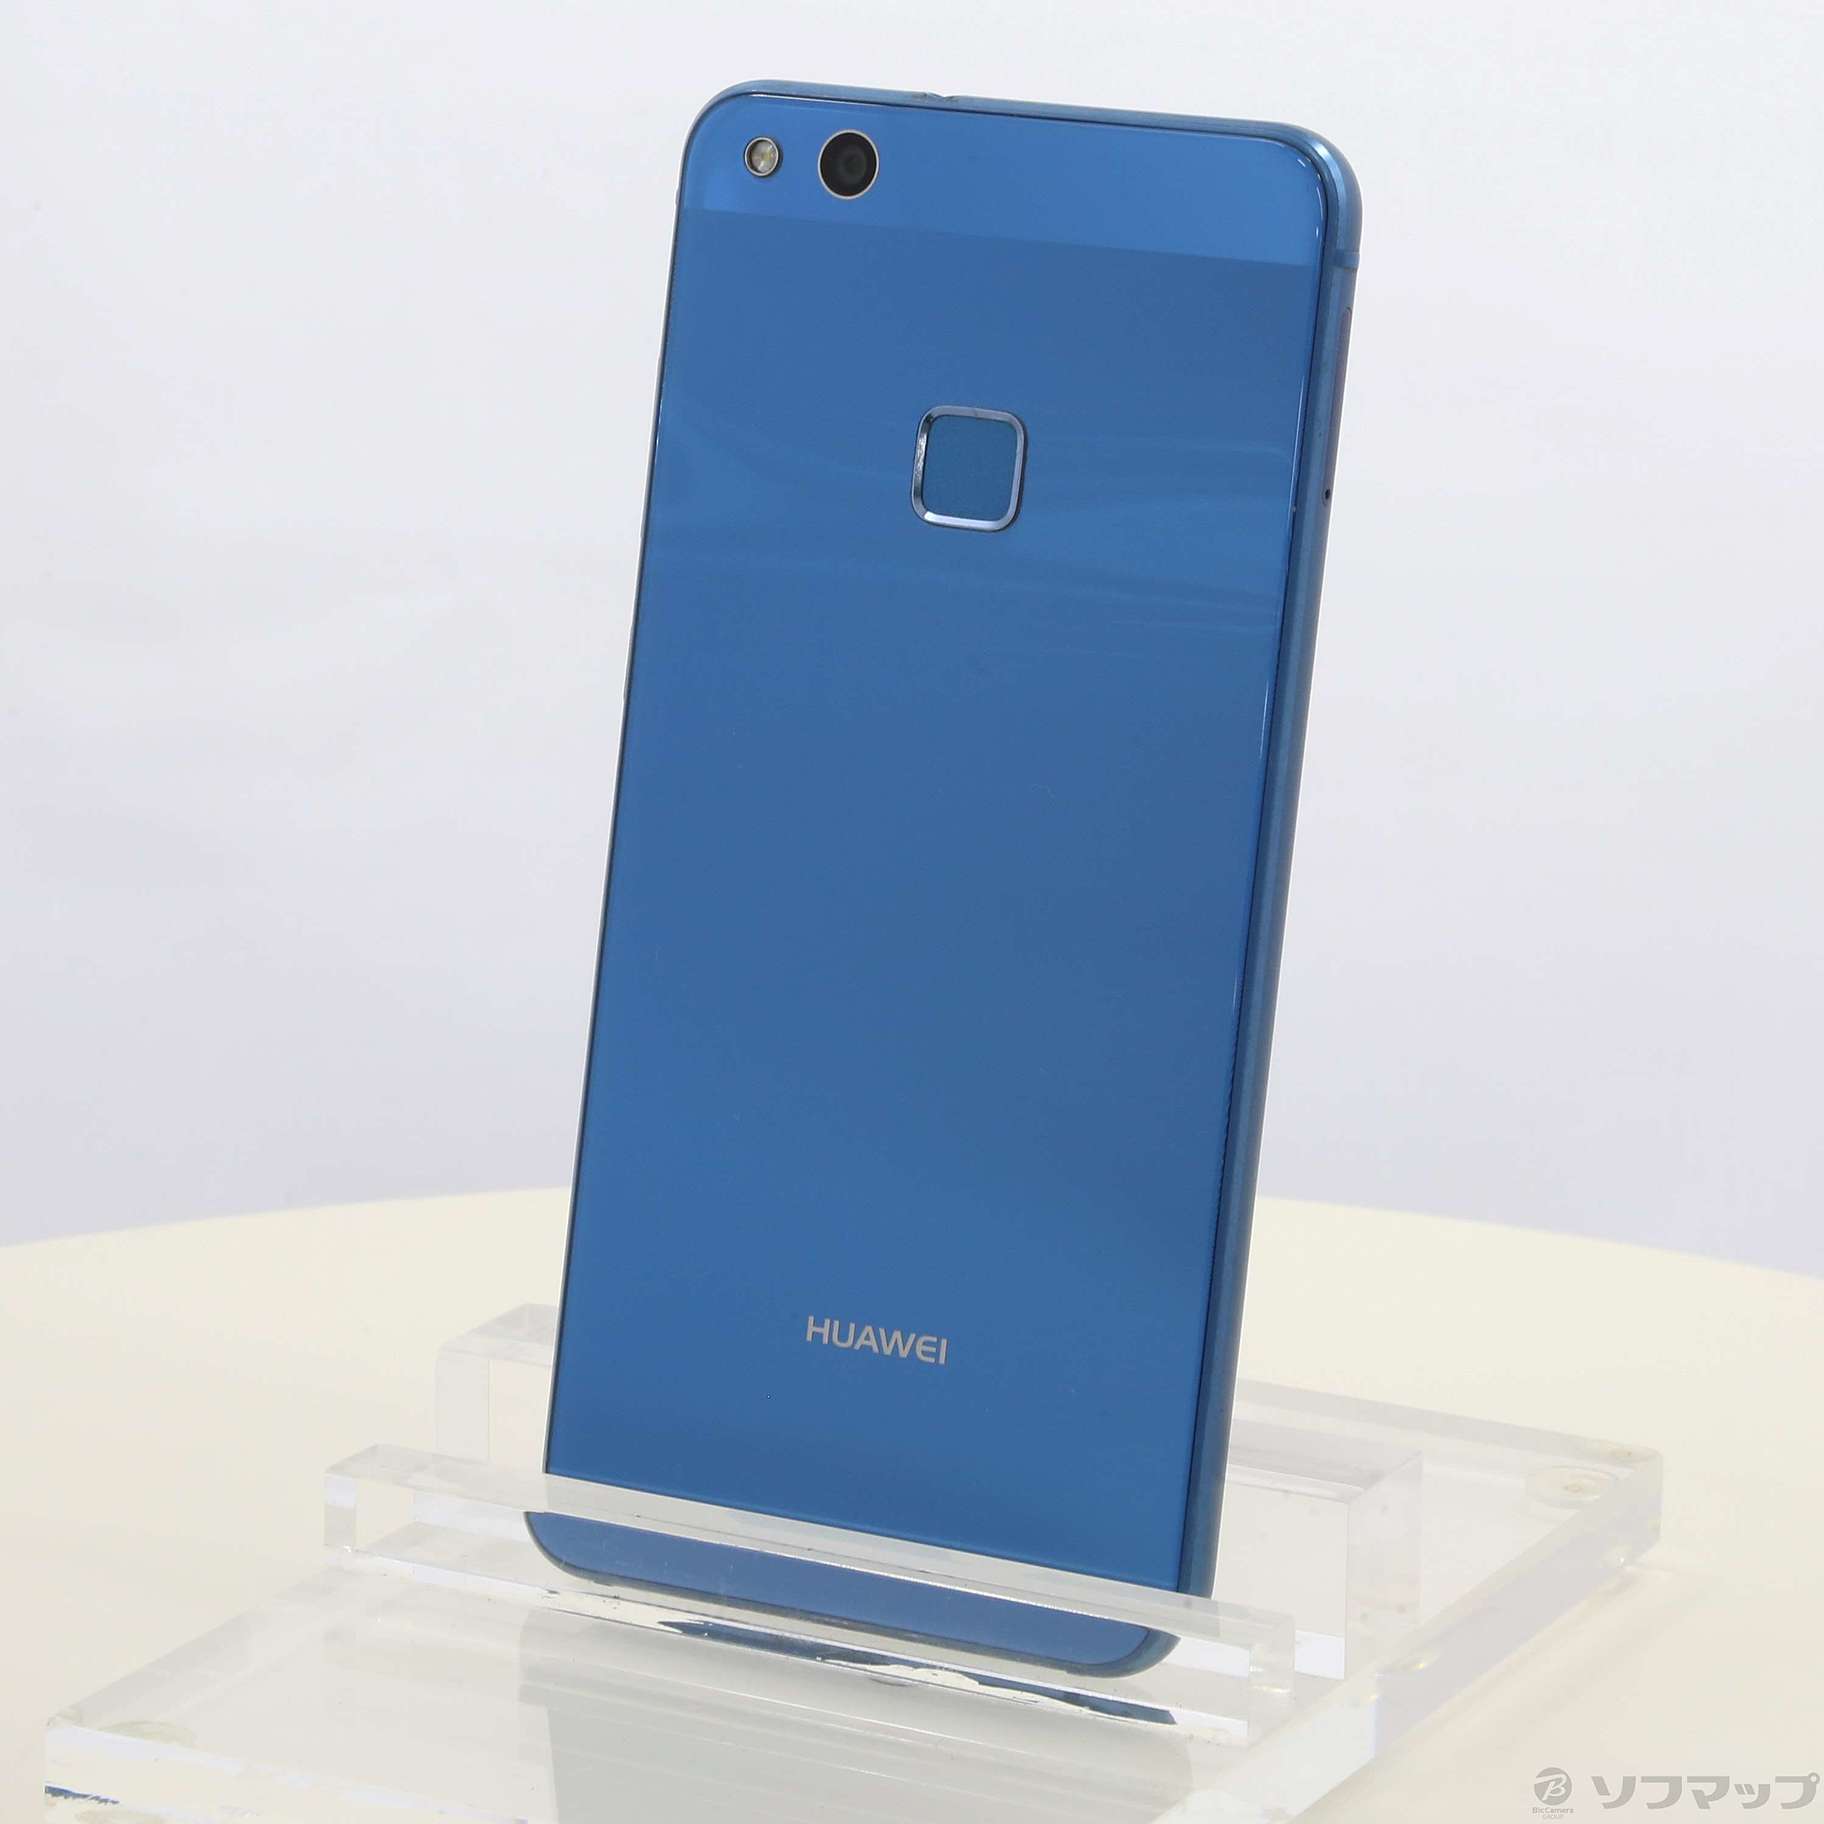 Huawei P10 lite サファイアブルー 新品 SIMフリー